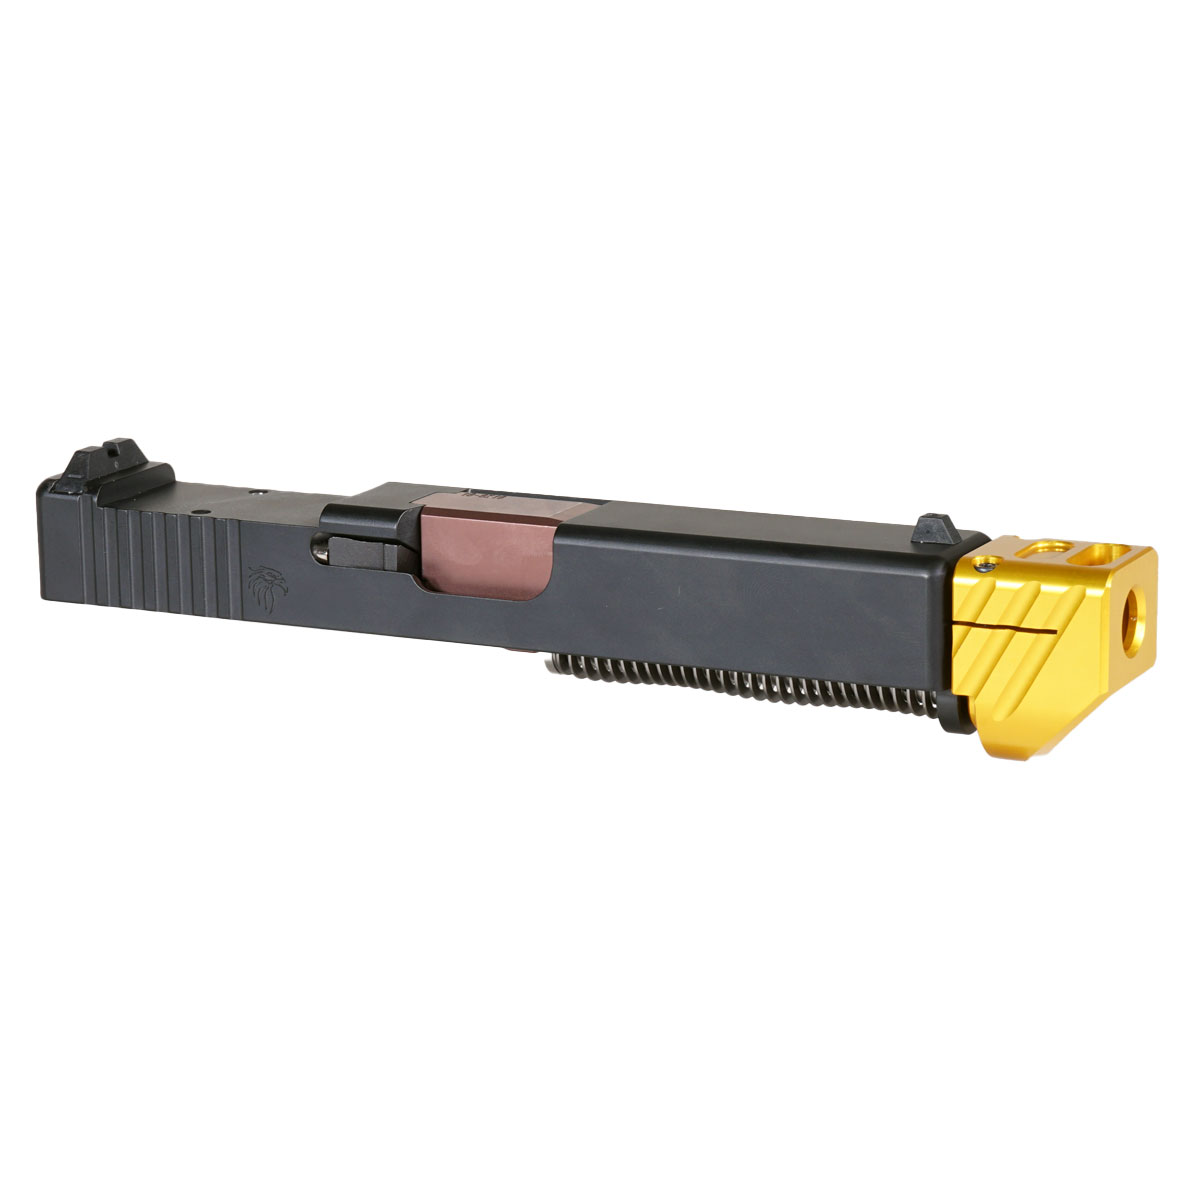 DD 'Blockbuster V2 w/ Gold Compensator' 9mm Complete Slide Kit - Glock 19 Gen 1-3 Compatible